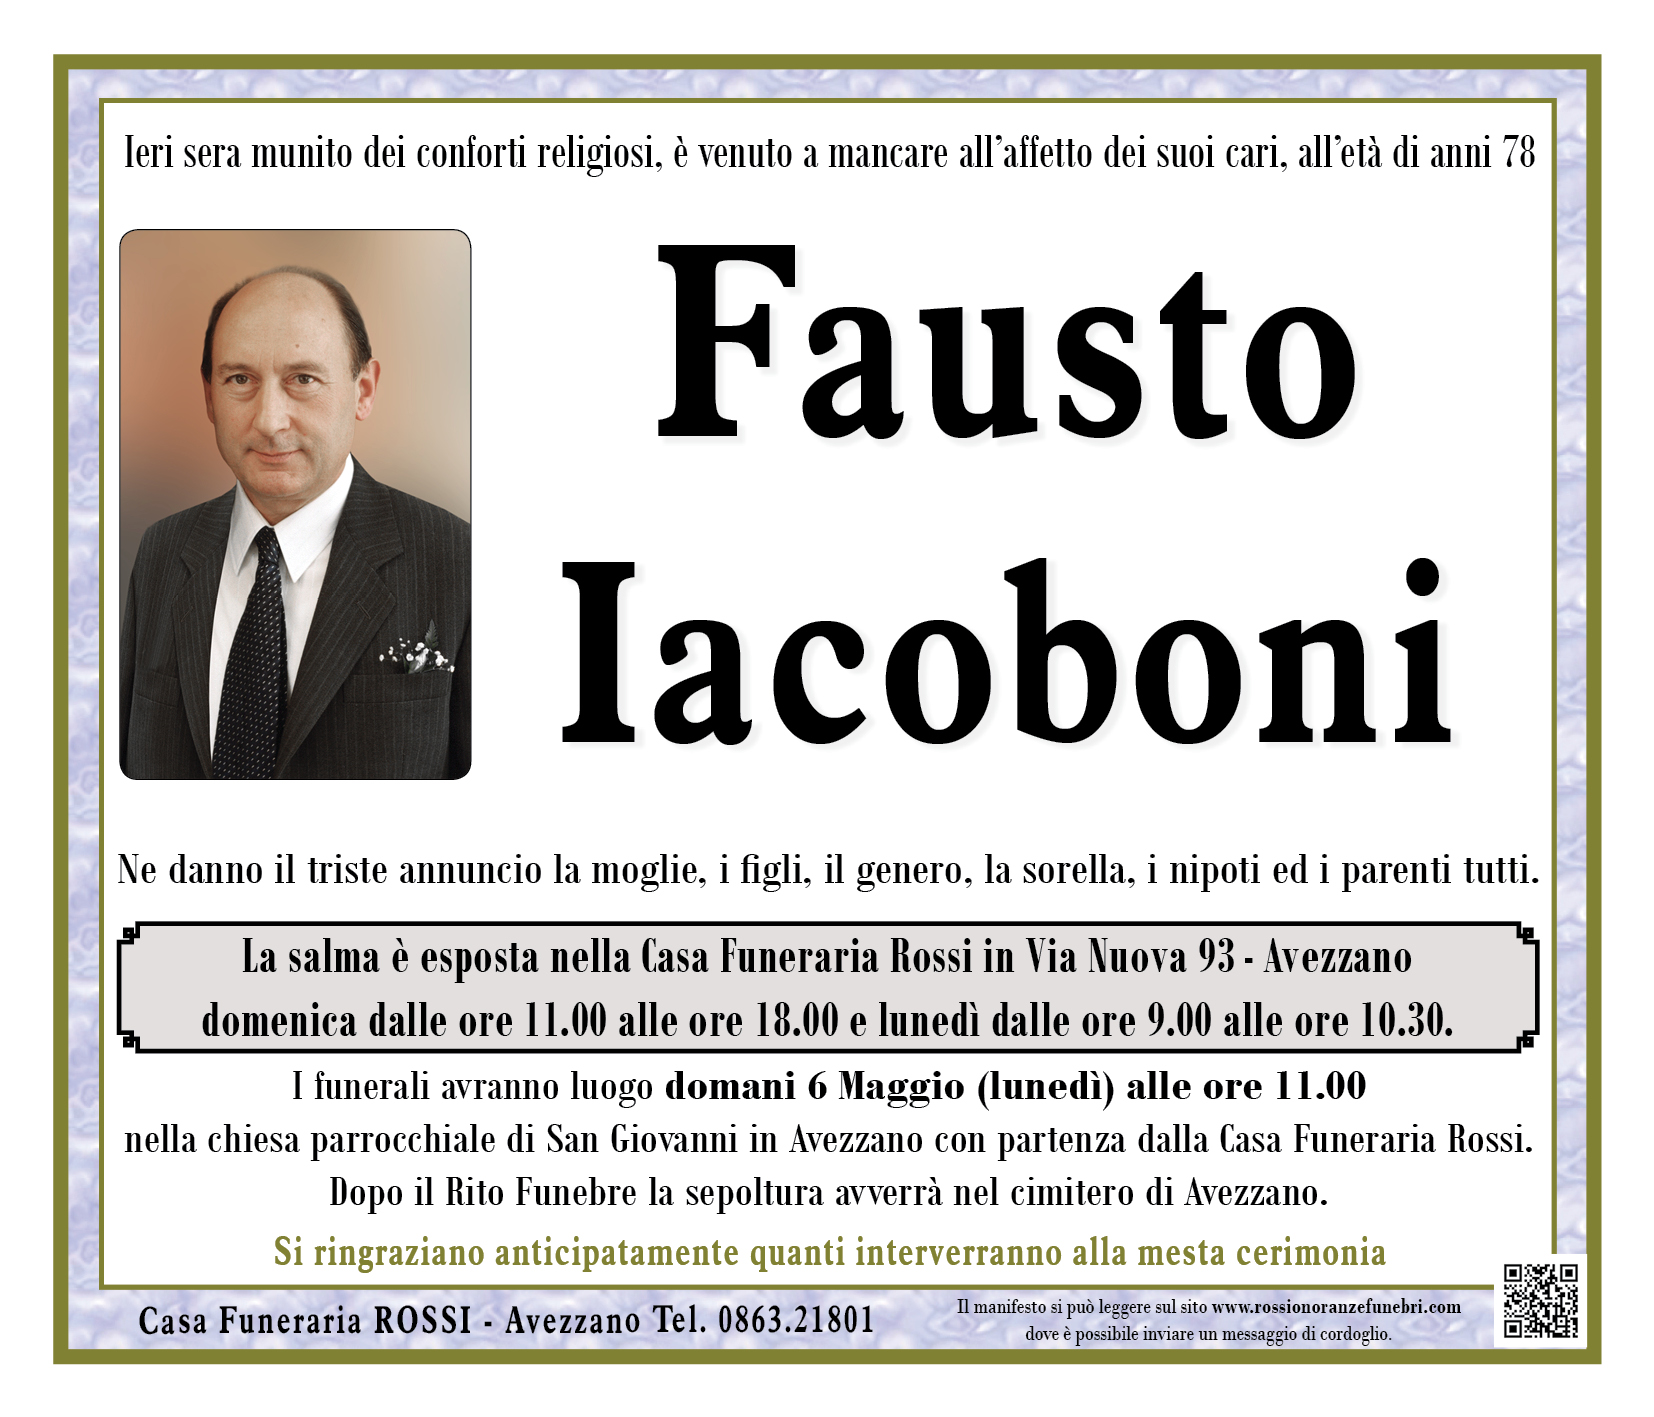 Fausto Iacoboni